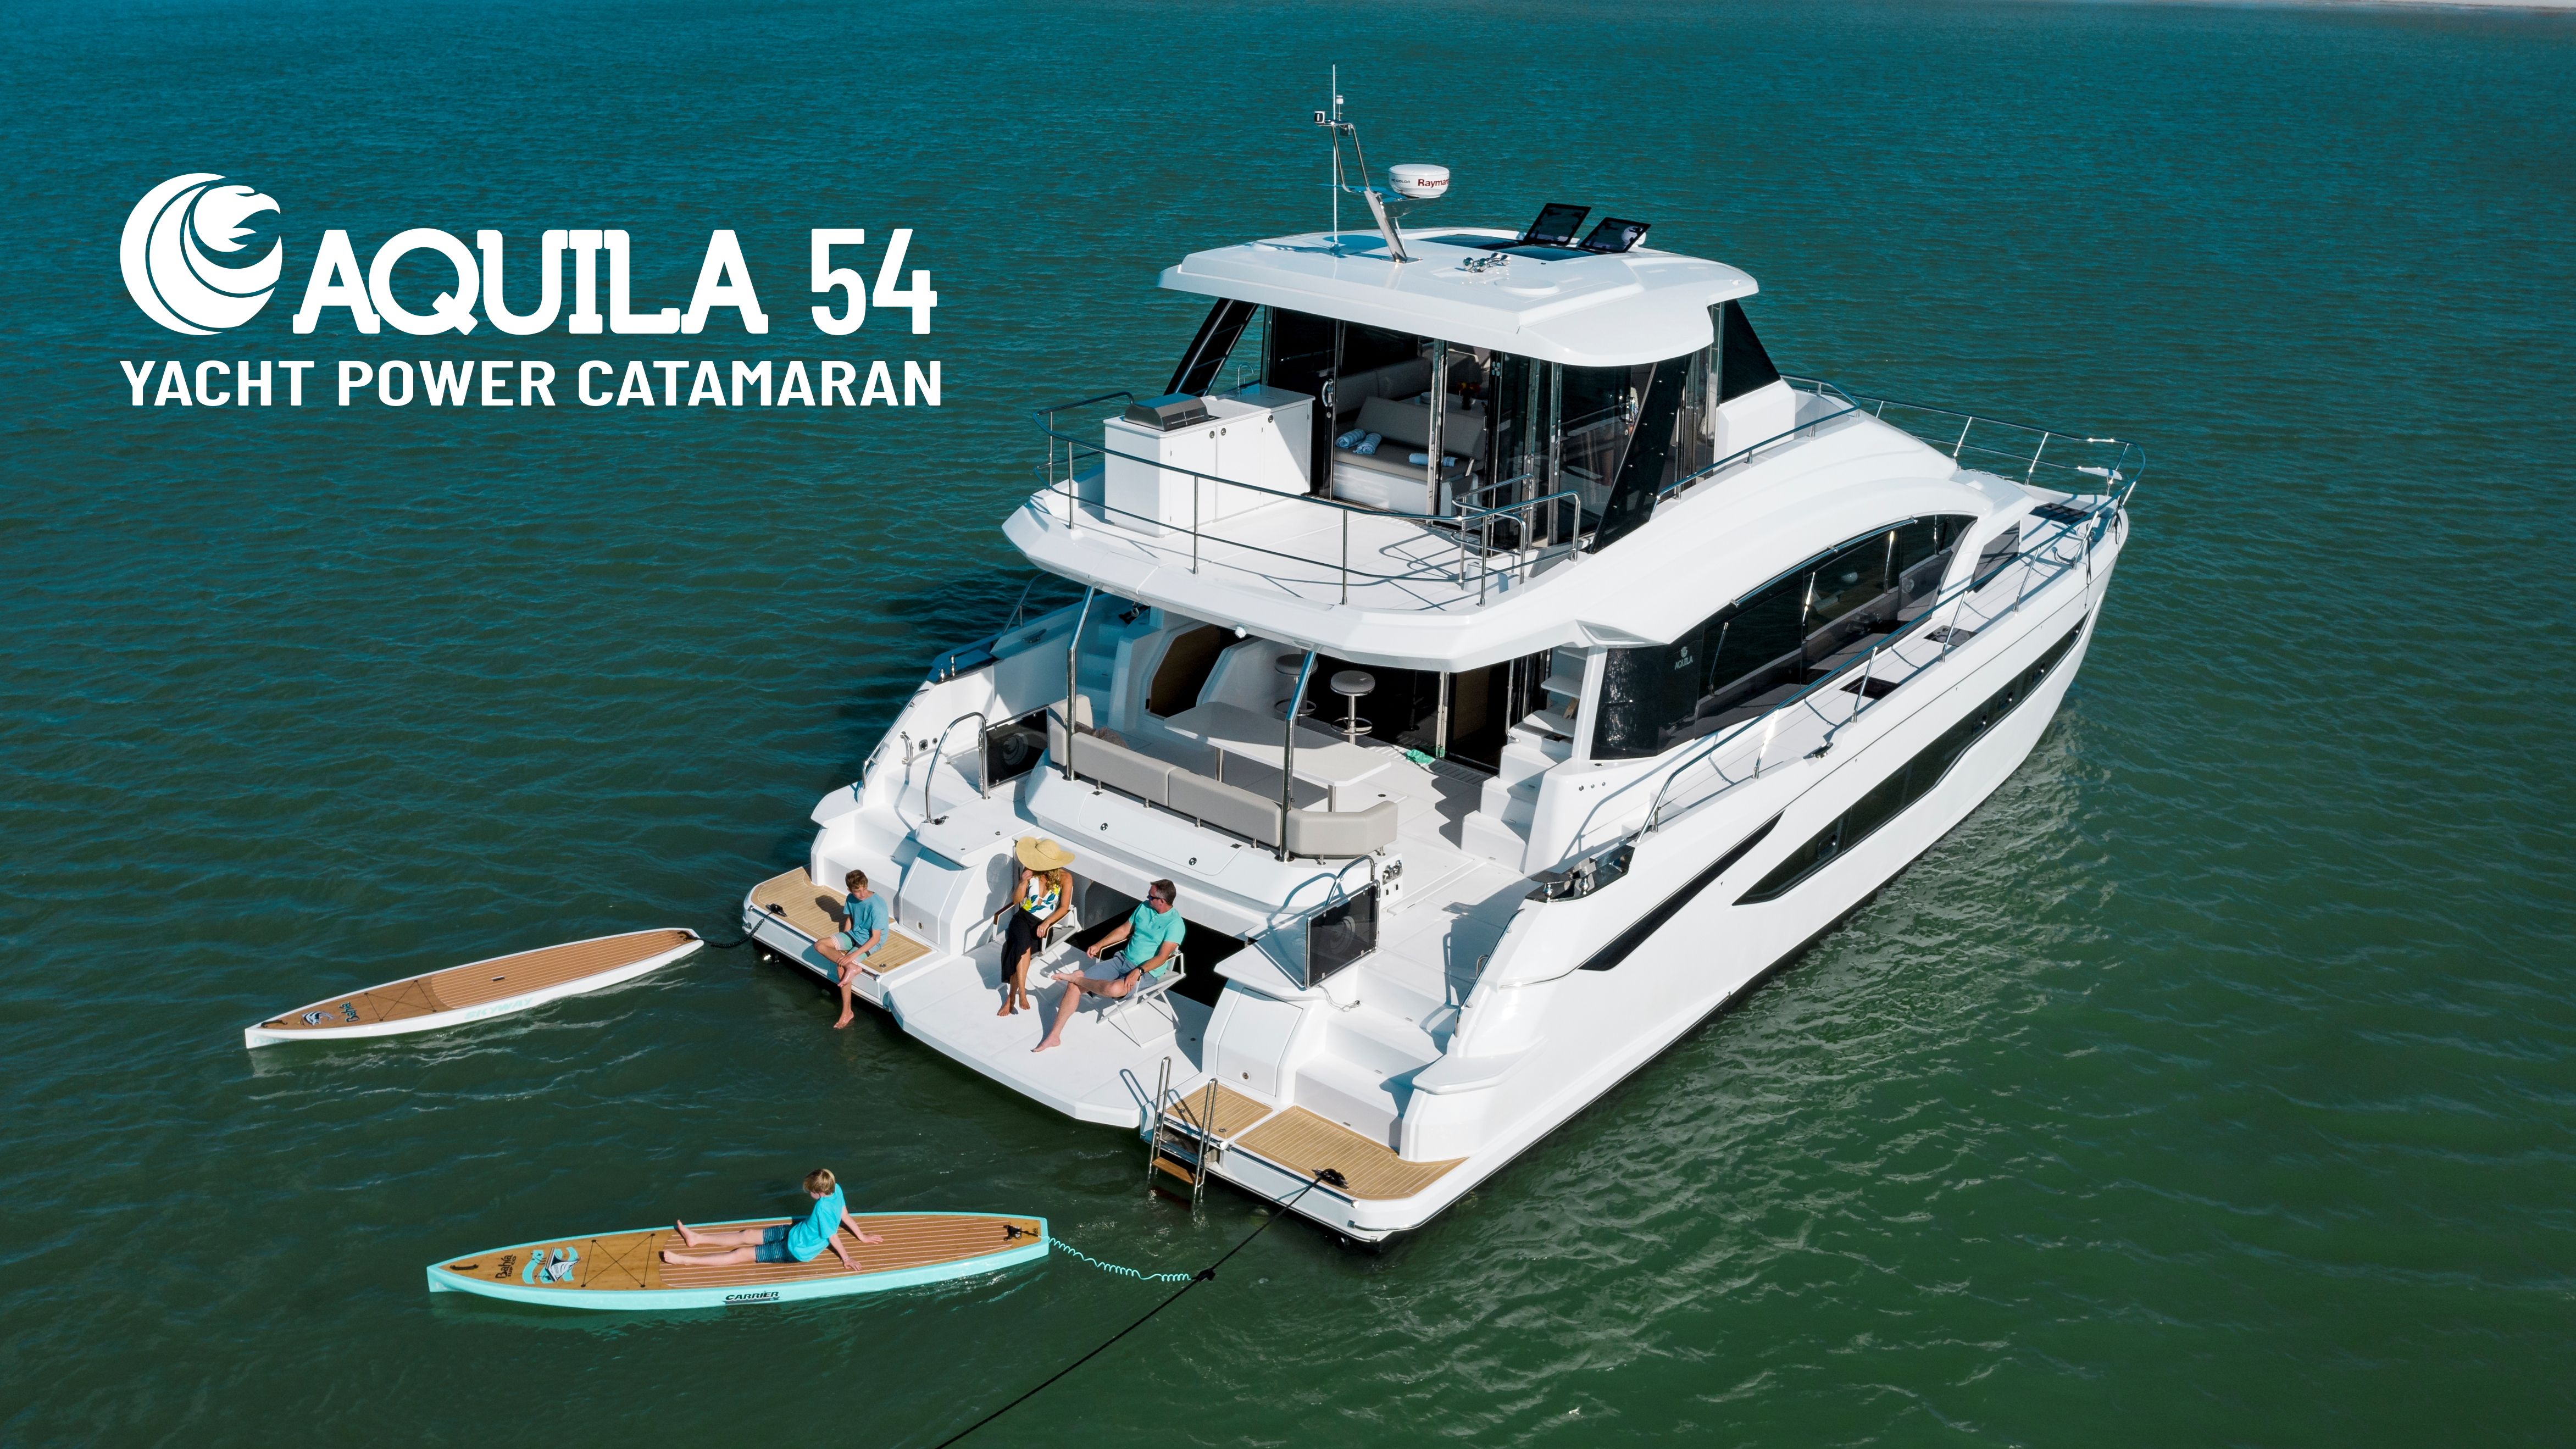 Aquila 54 Yacht Power Catamaran - Walkaround Tour